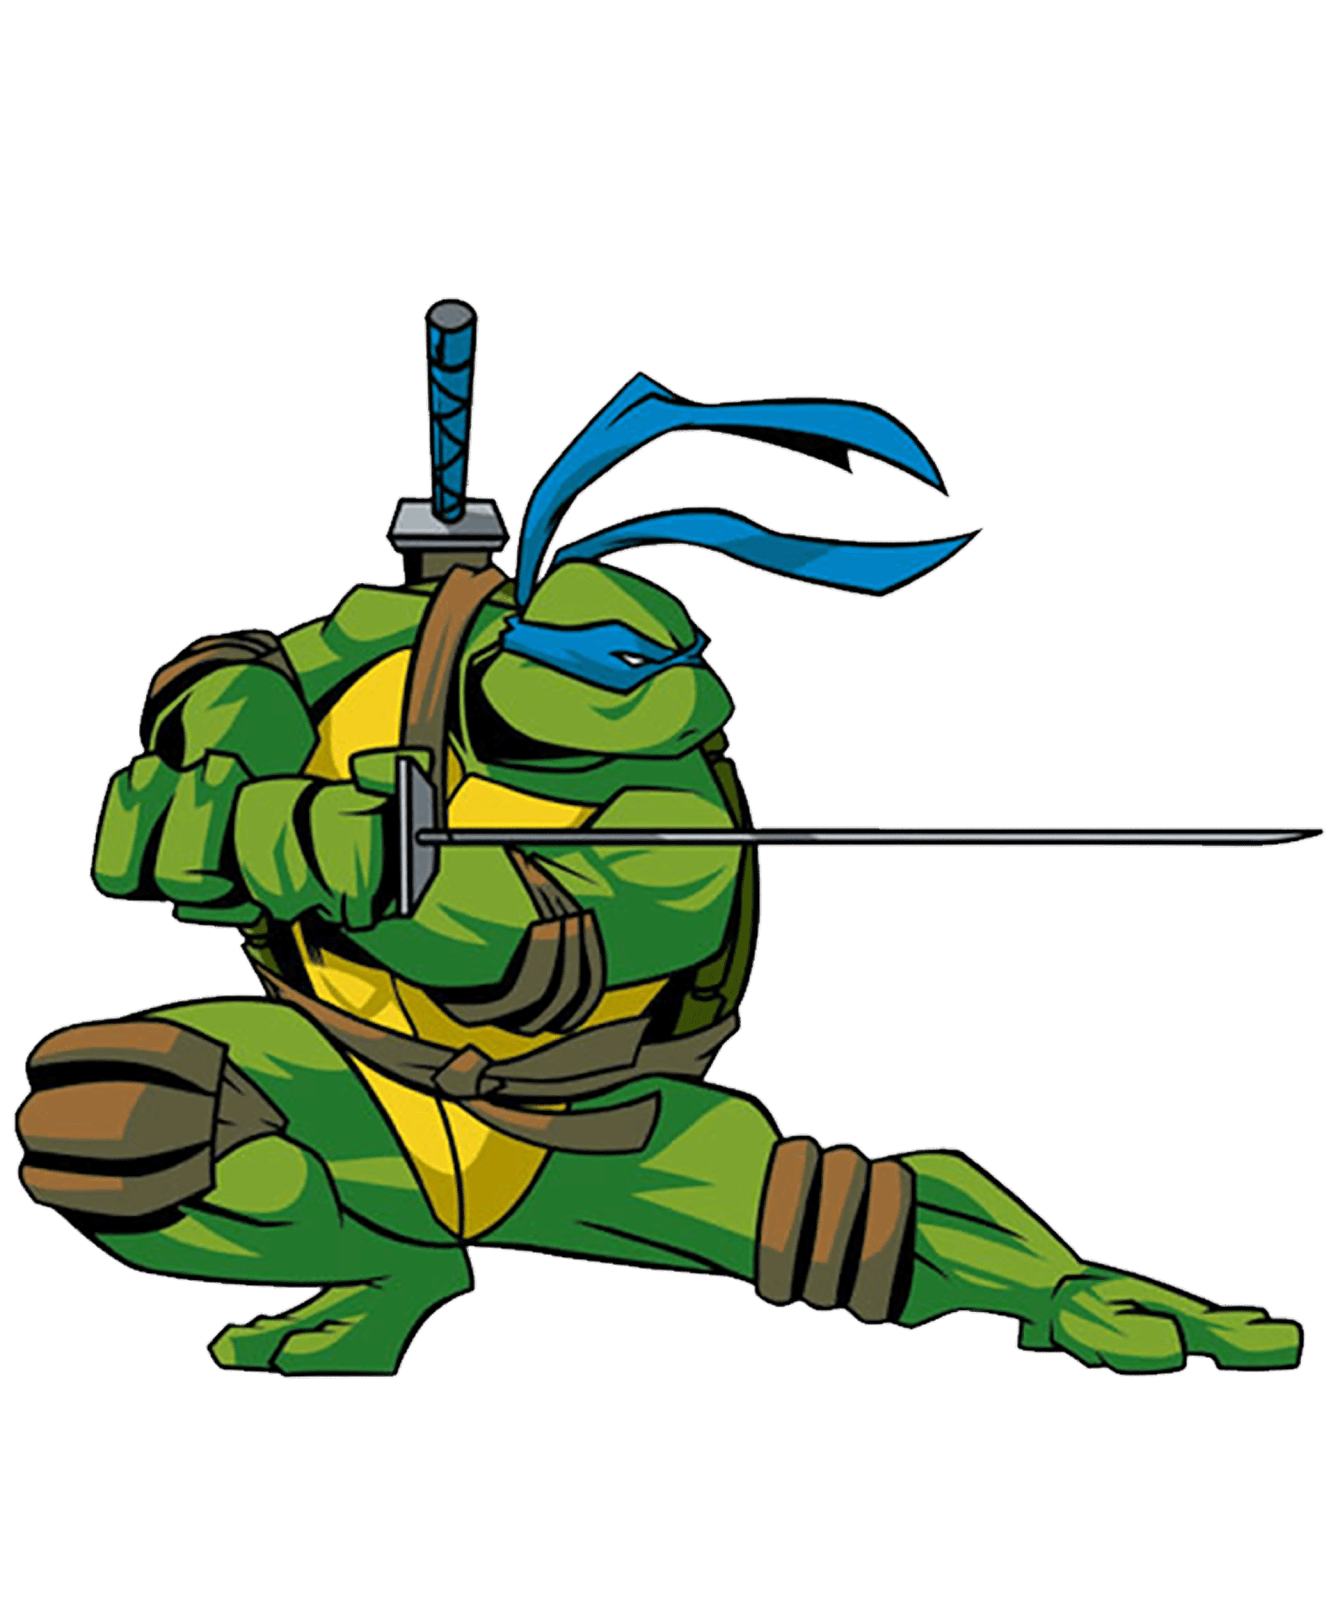 ምስል በተከፈለ las tortugas ninja በማስታወቂያው png ዘይት ተስፋ ከሚያበሩ